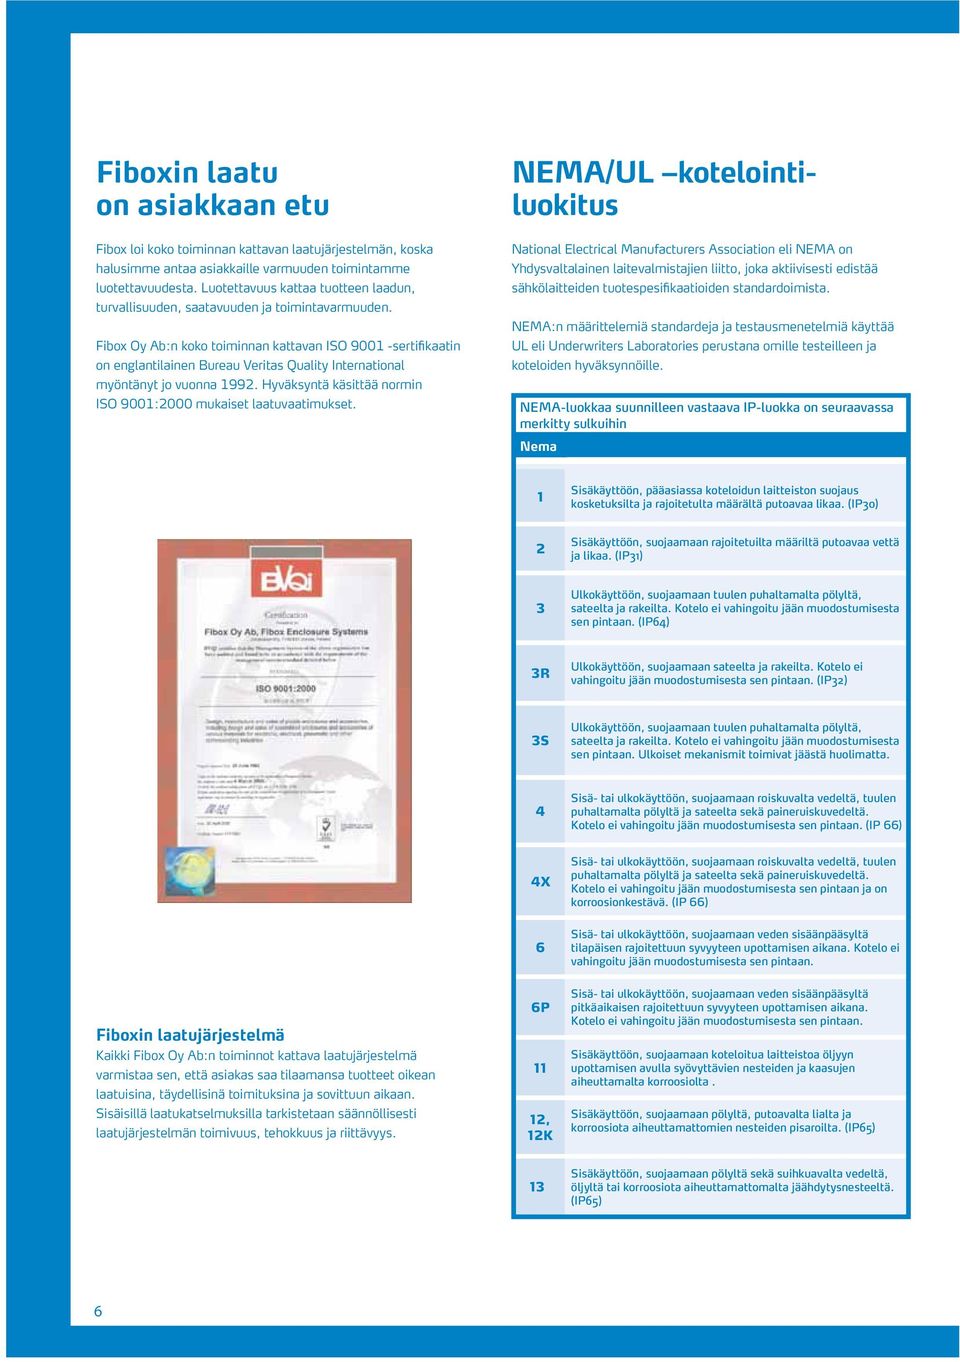 Fibox Oy Ab:n koko toiminnan kattavan ISO 9001 -sertifikaatin on englantilainen Bureau Veritas Quality International myöntänyt jo vuonna 1992.